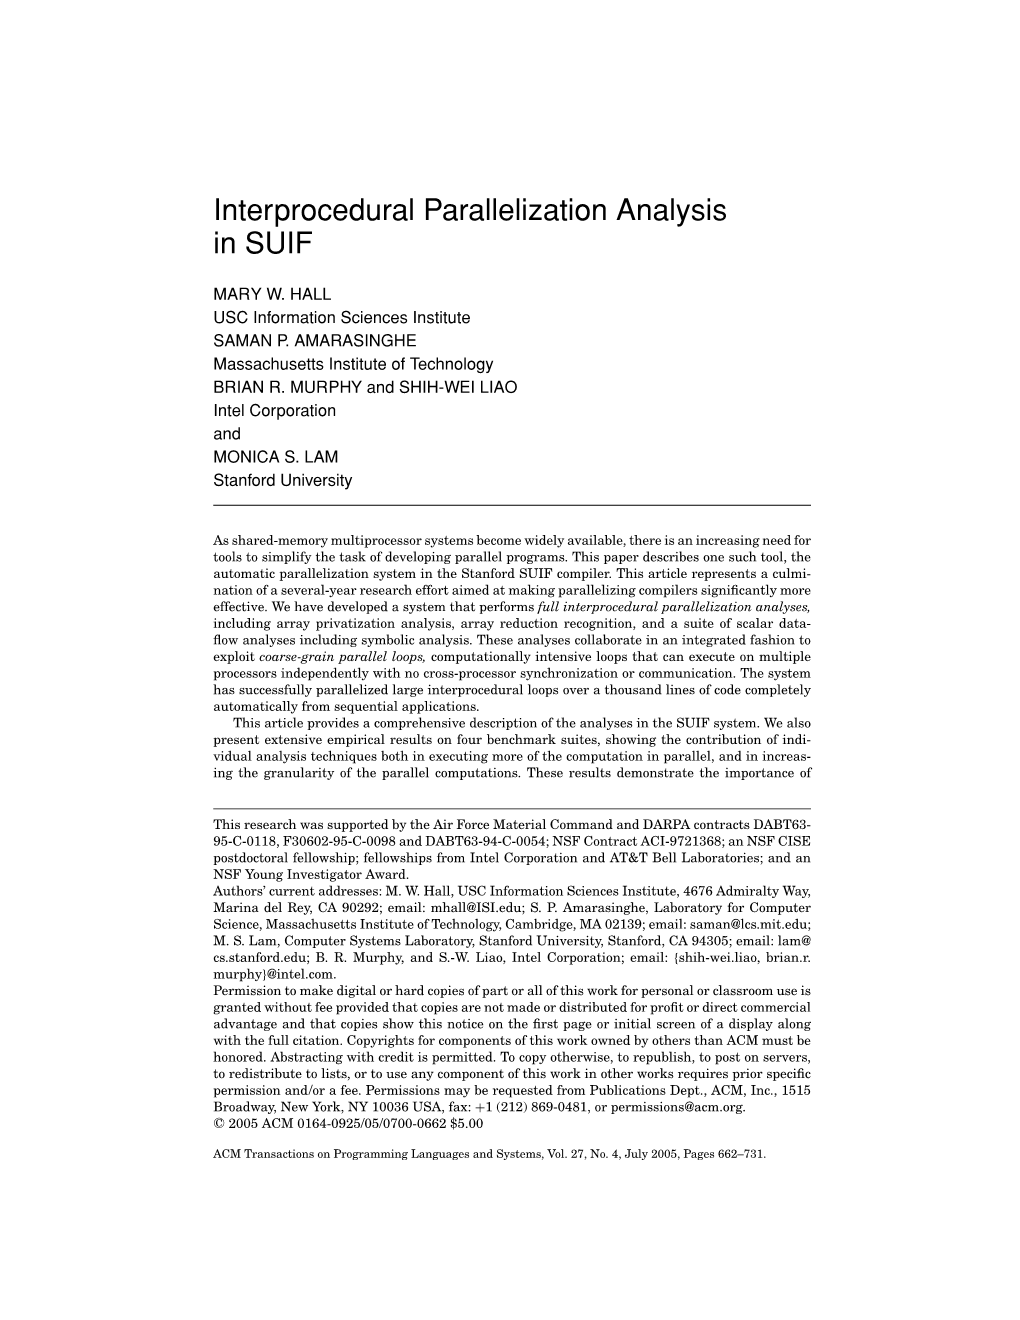 Interprocedural Parallelization Analysis in SUIF